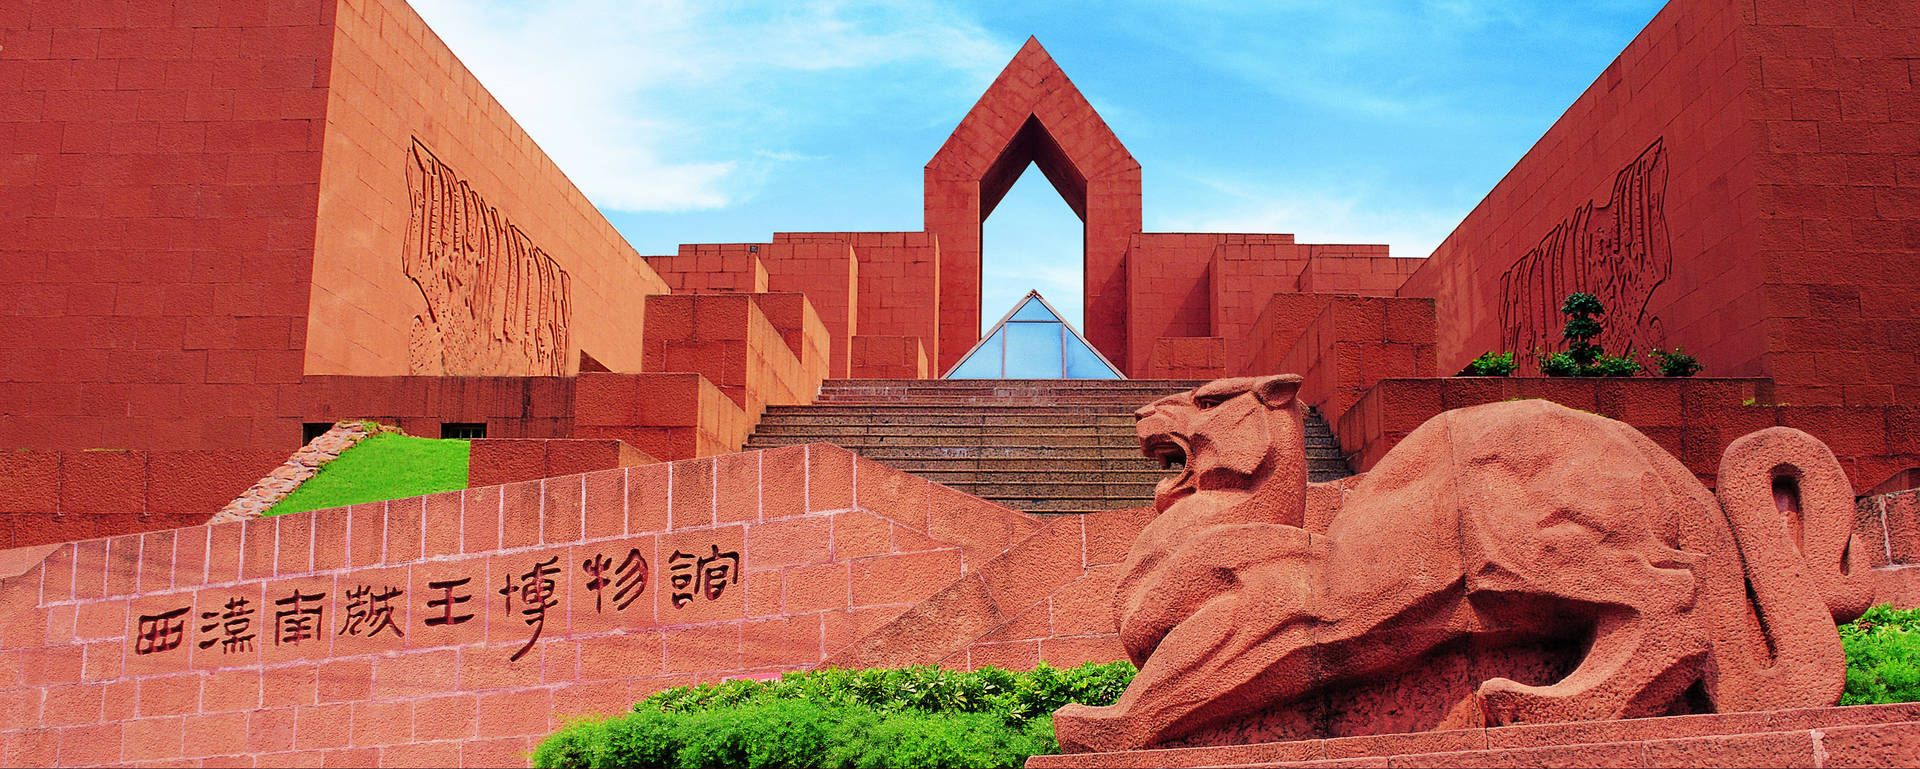 Guangzhou Western Han Mausoleum Background